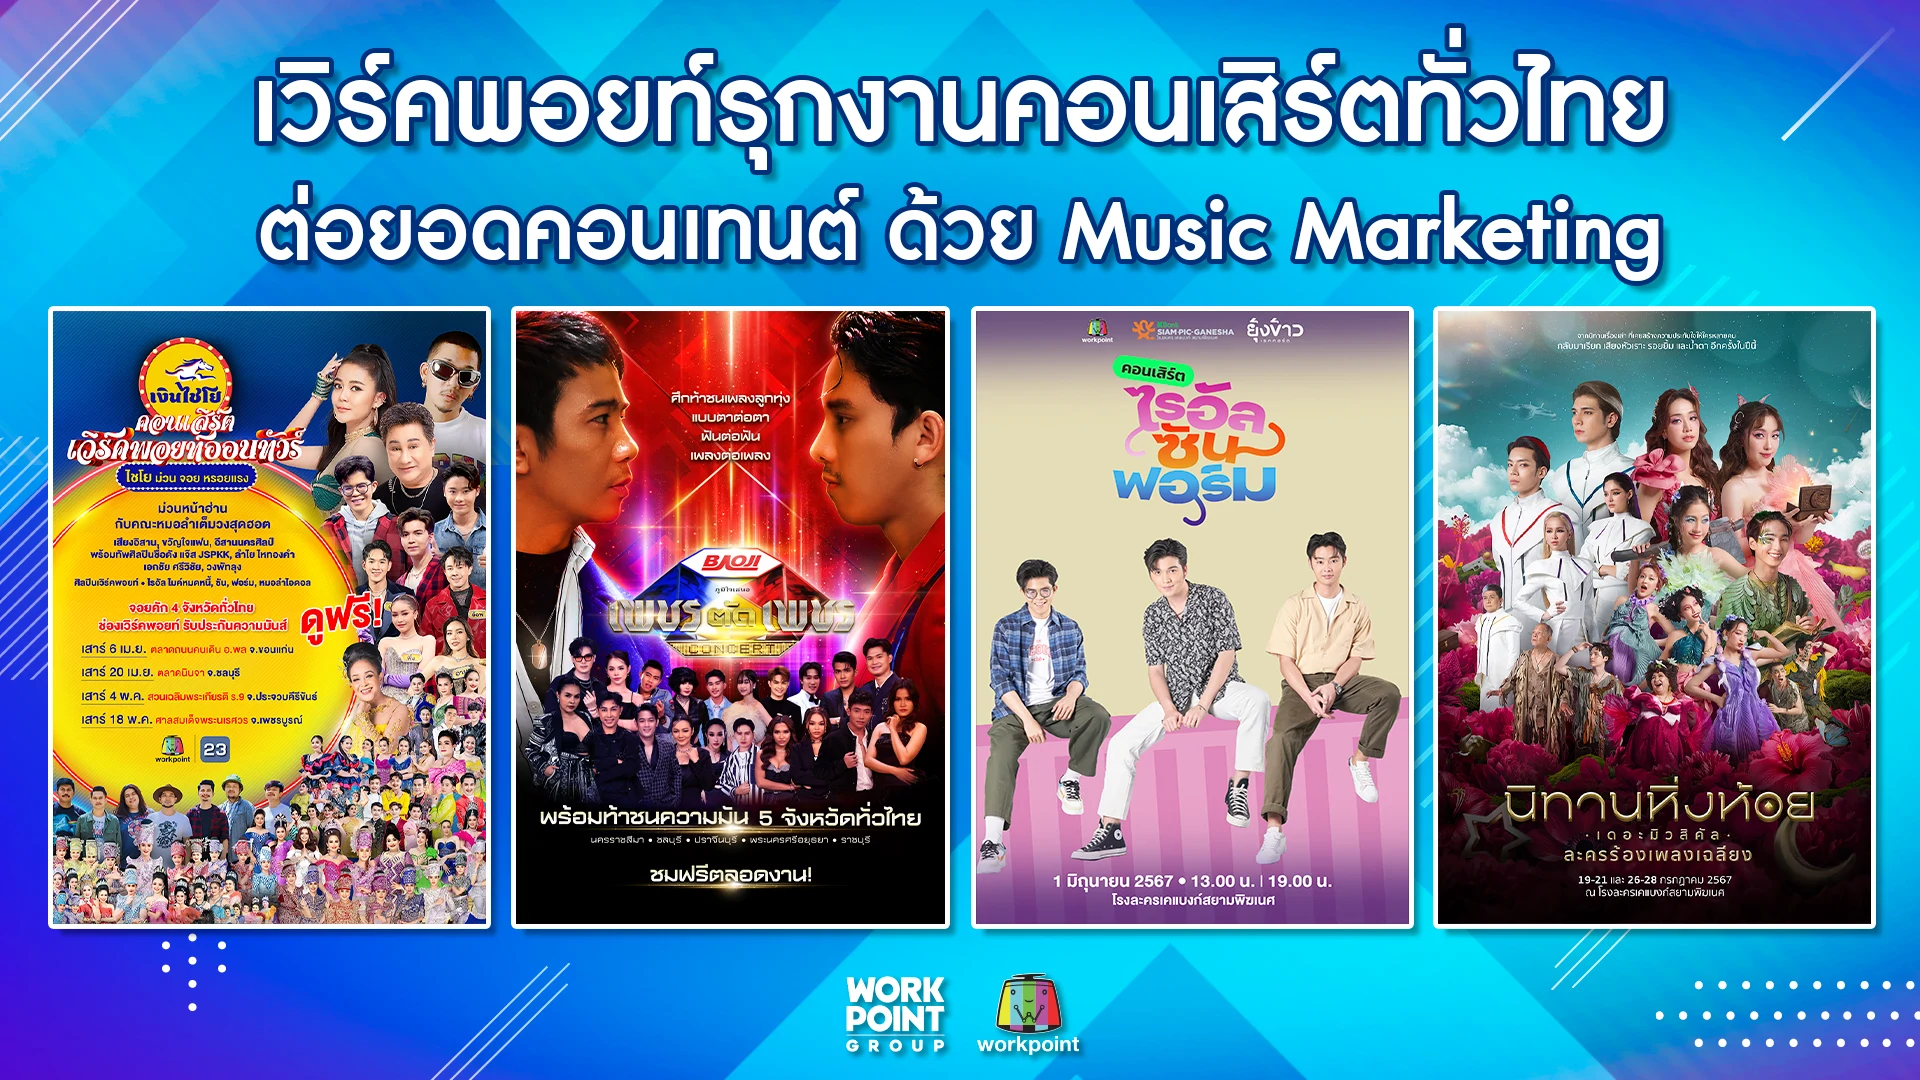 เวิร์คพอยท์รุกงานคอนเสิร์ต ต่อยอดคอนเทนต์ด้วย Music Marketing รวมพลศิลปินไปหาผู้ชมทุกภาคทั่วไทย